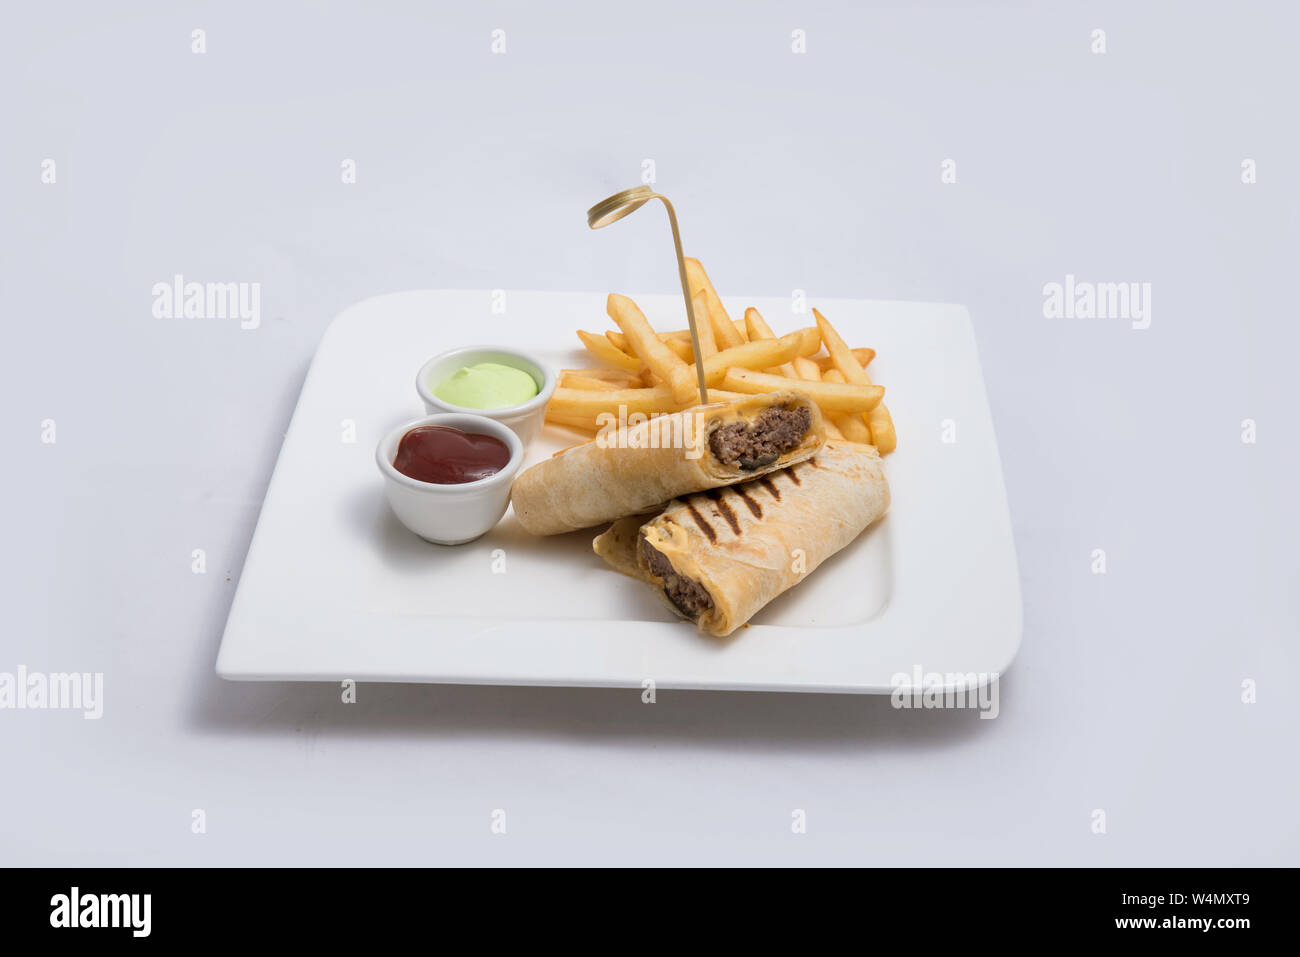 Einen niedrigen Kontrast hero Schuß eines Beef wrap Sandwich mit Samurai & alger Sauce und Pommes frites auf der Seite, auf einer minimalen weißen Hintergrund mit einem 45 Grad angl Stockfoto